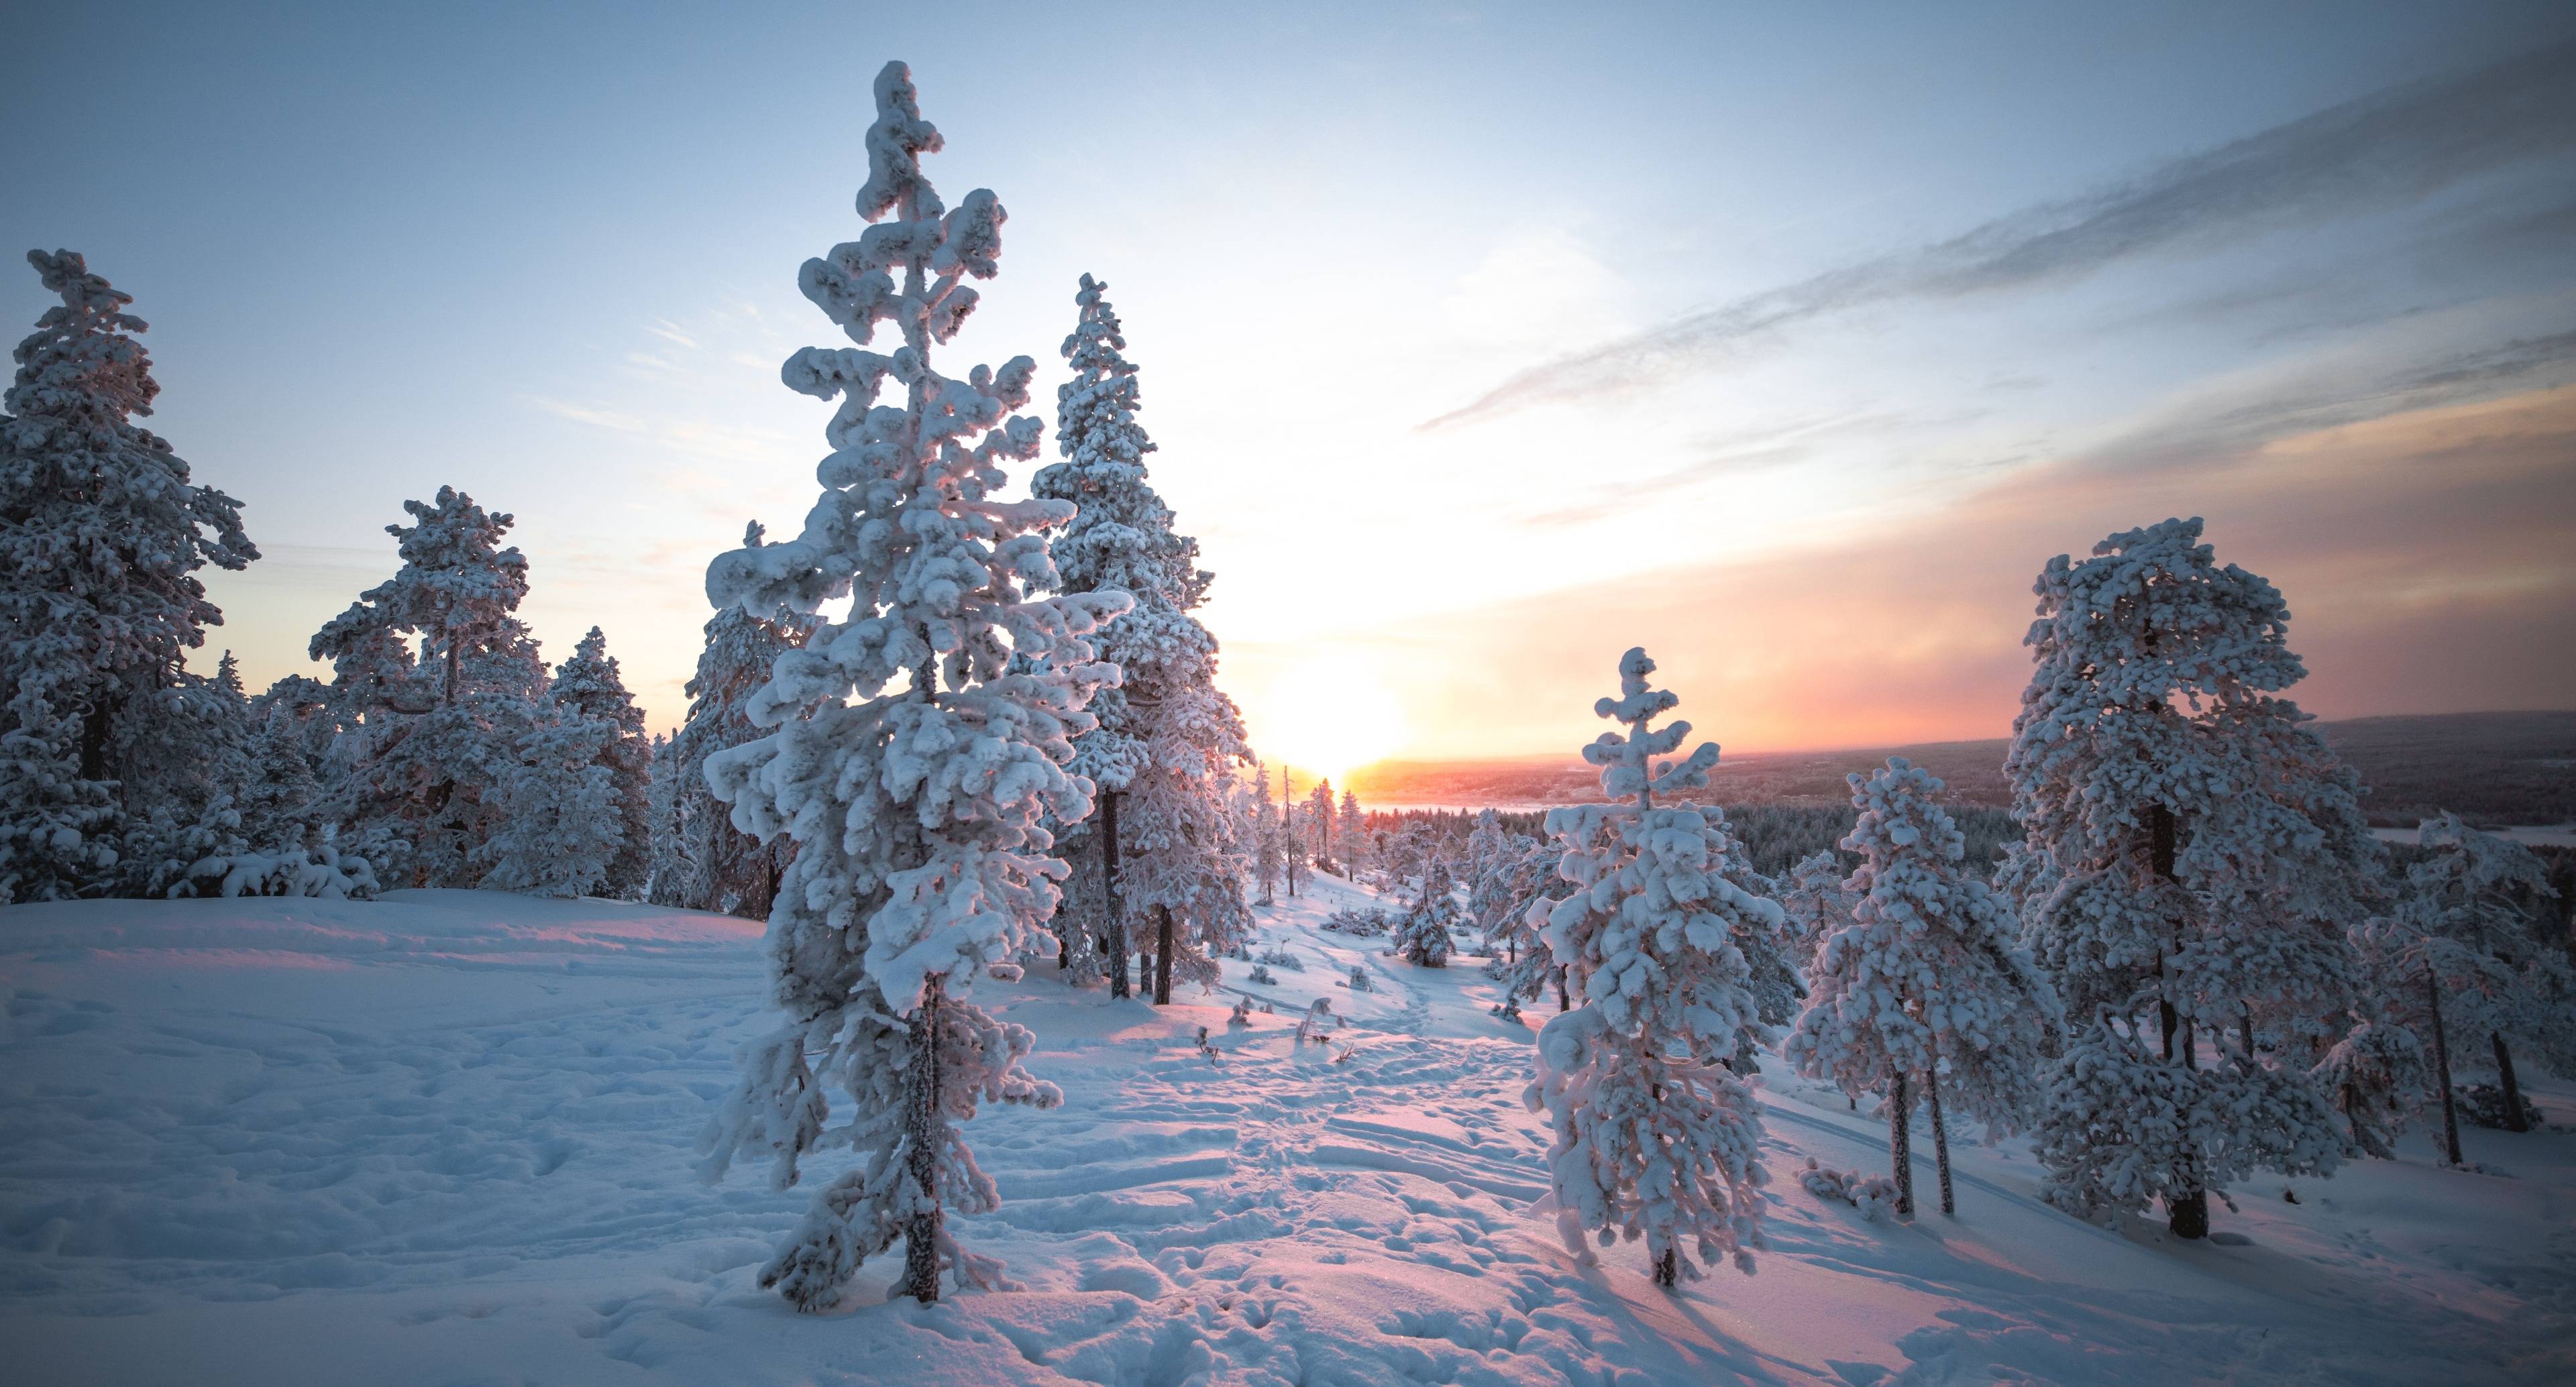 Retour à Rovaniemi par une route de campagne tranquille